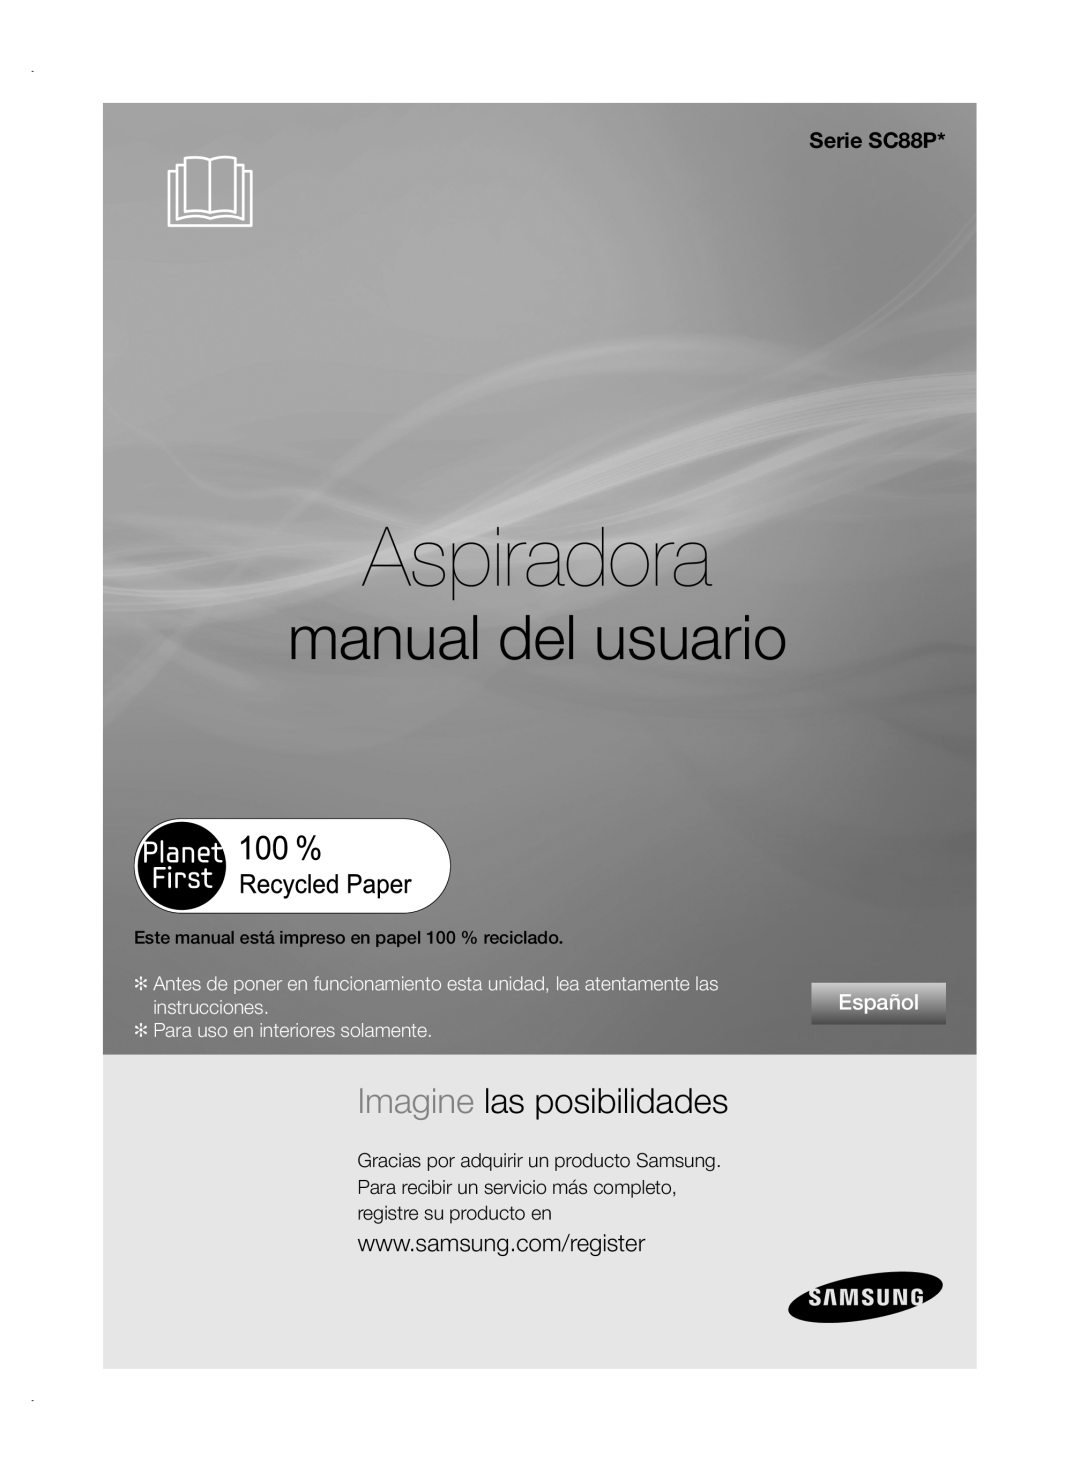 Samsung VCC88P0H1B Aspiradora, manual del usuario, Imagine las posibilidades, Serie SC88P, Español, instrucciones 